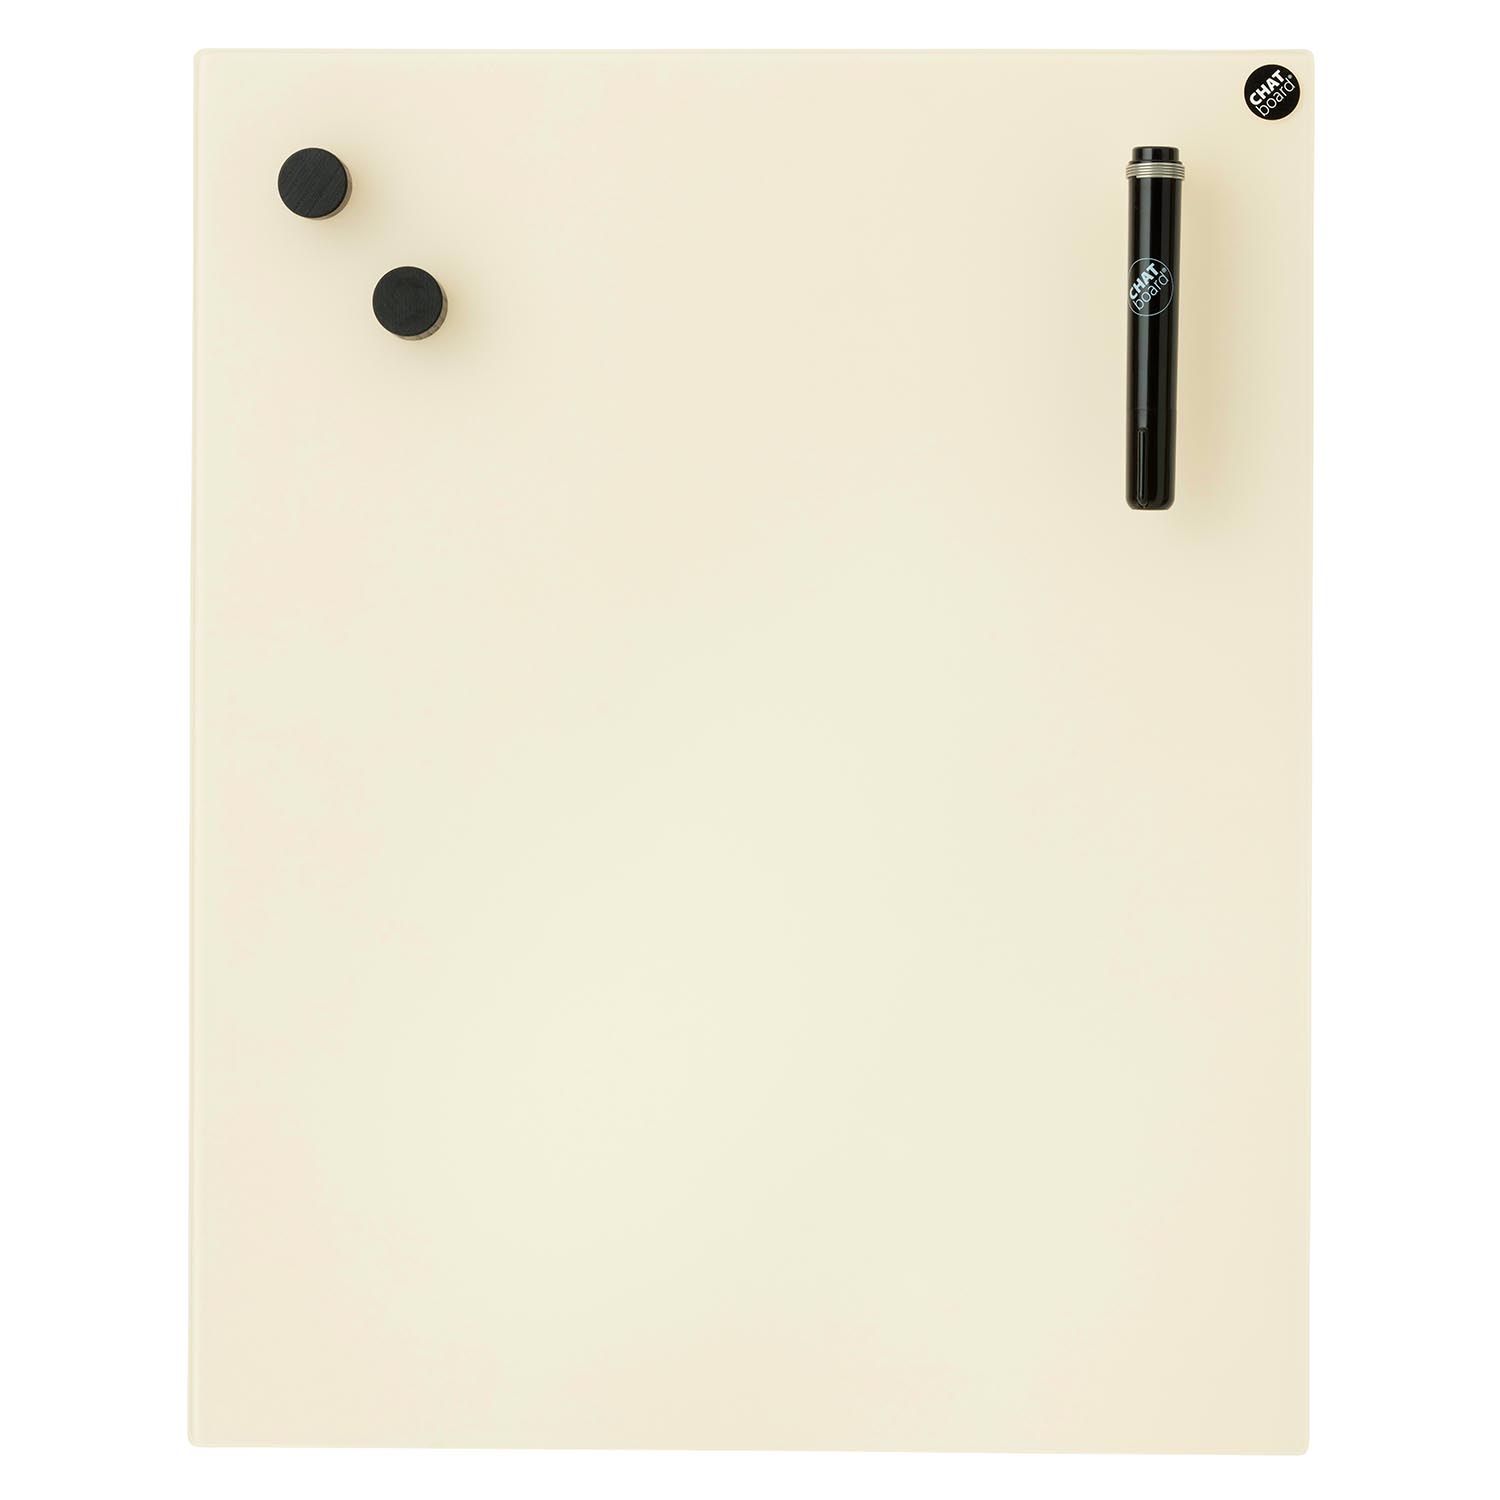 Classic Schreibtafel, Grösse 120 x 58.5 cm, Ausrichtung horizontal, Glas red 11 mtr von Chat Board